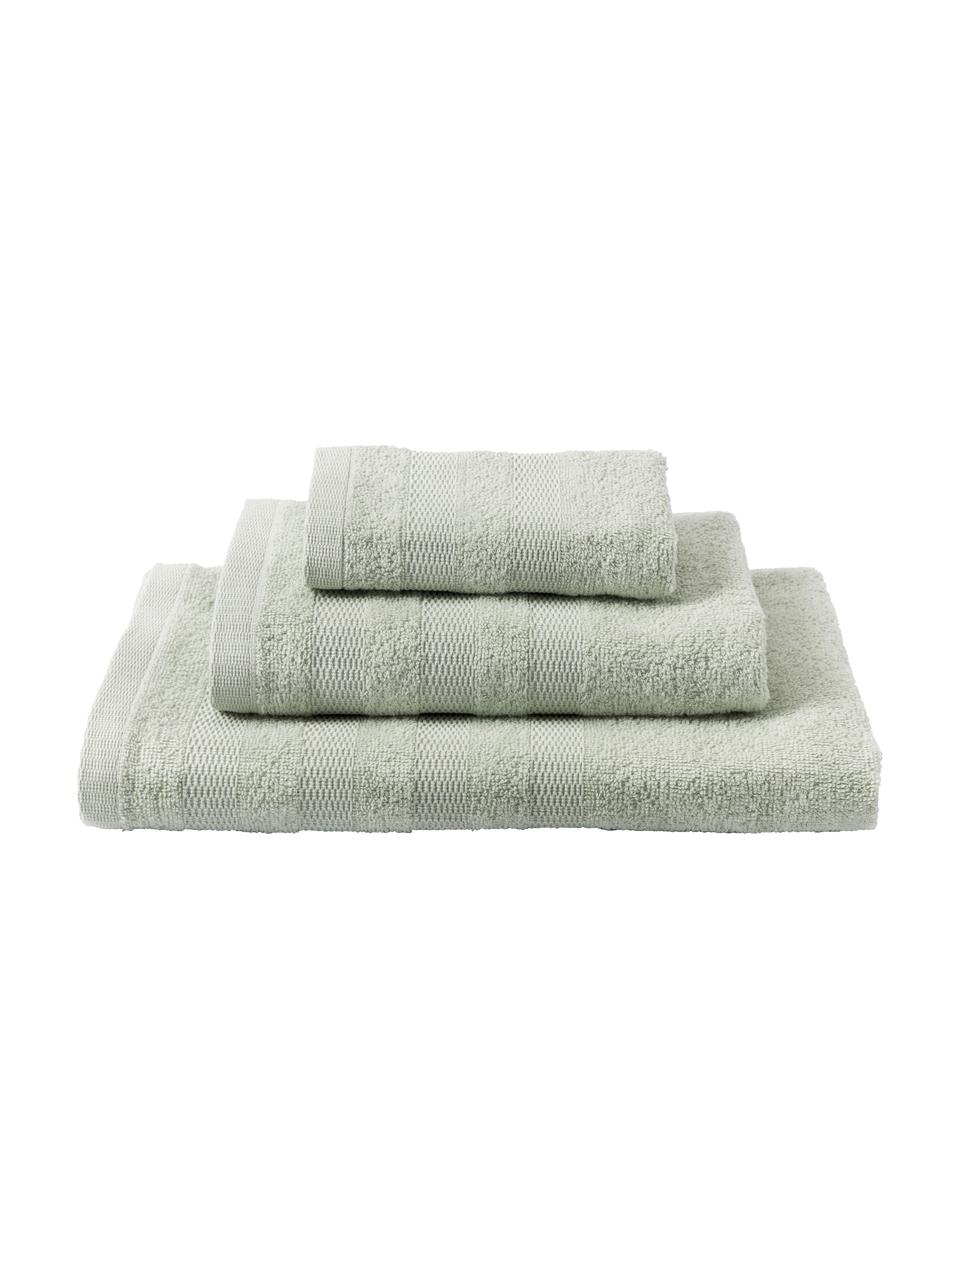 Súprava uterákov Camila, 3 diely, Šalviová zelená, Súprava s rôznymi veľkosťami